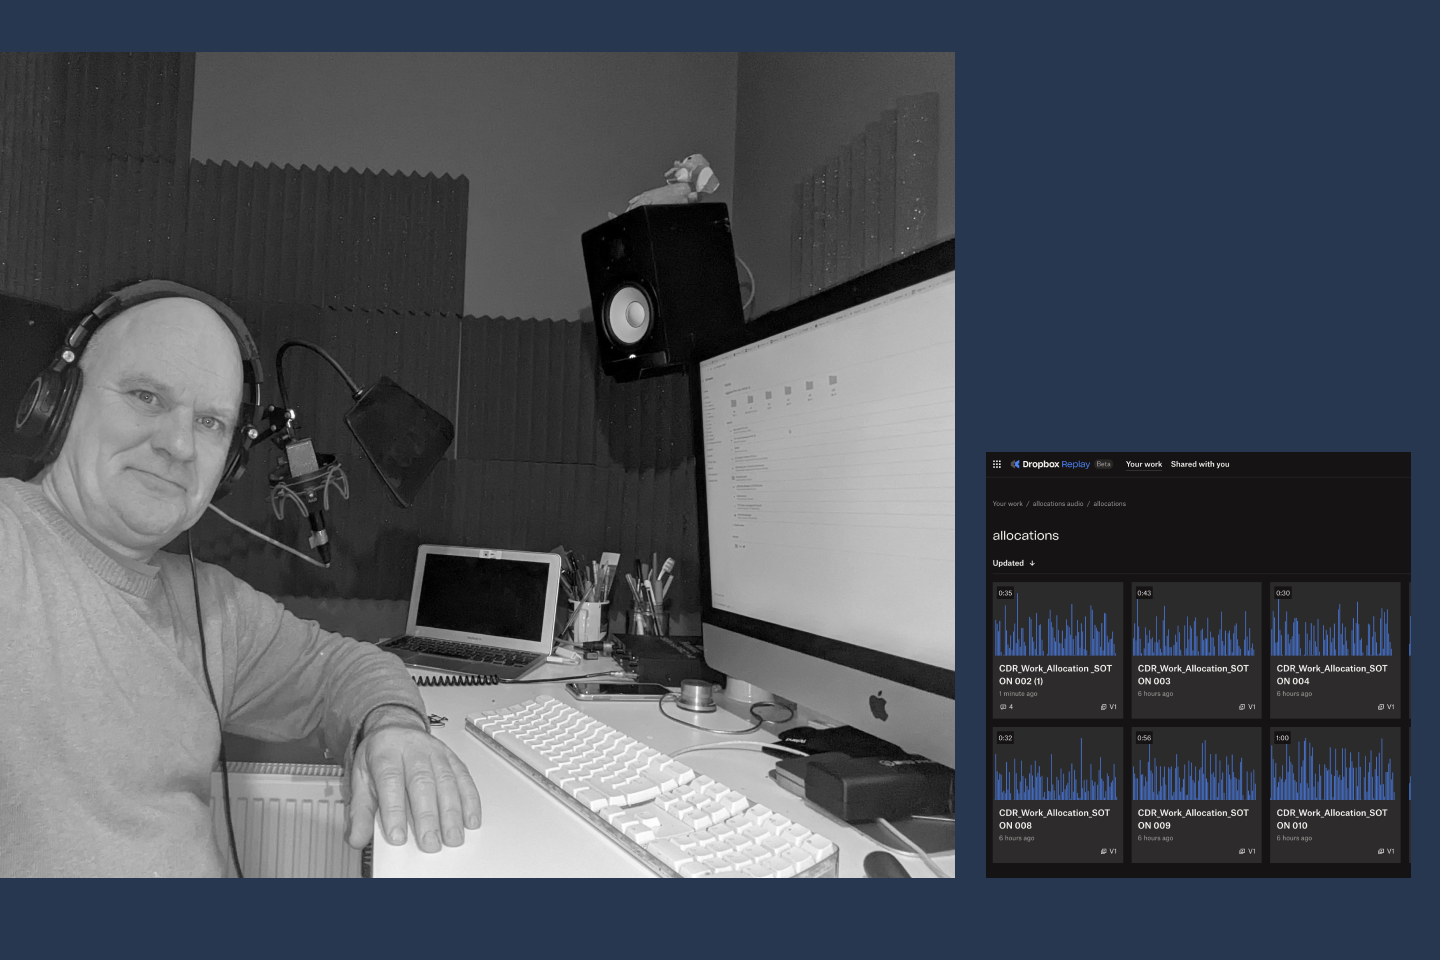 Seorang pria di studio rekaman duduk di depan komputer; Memutar ulang file audio